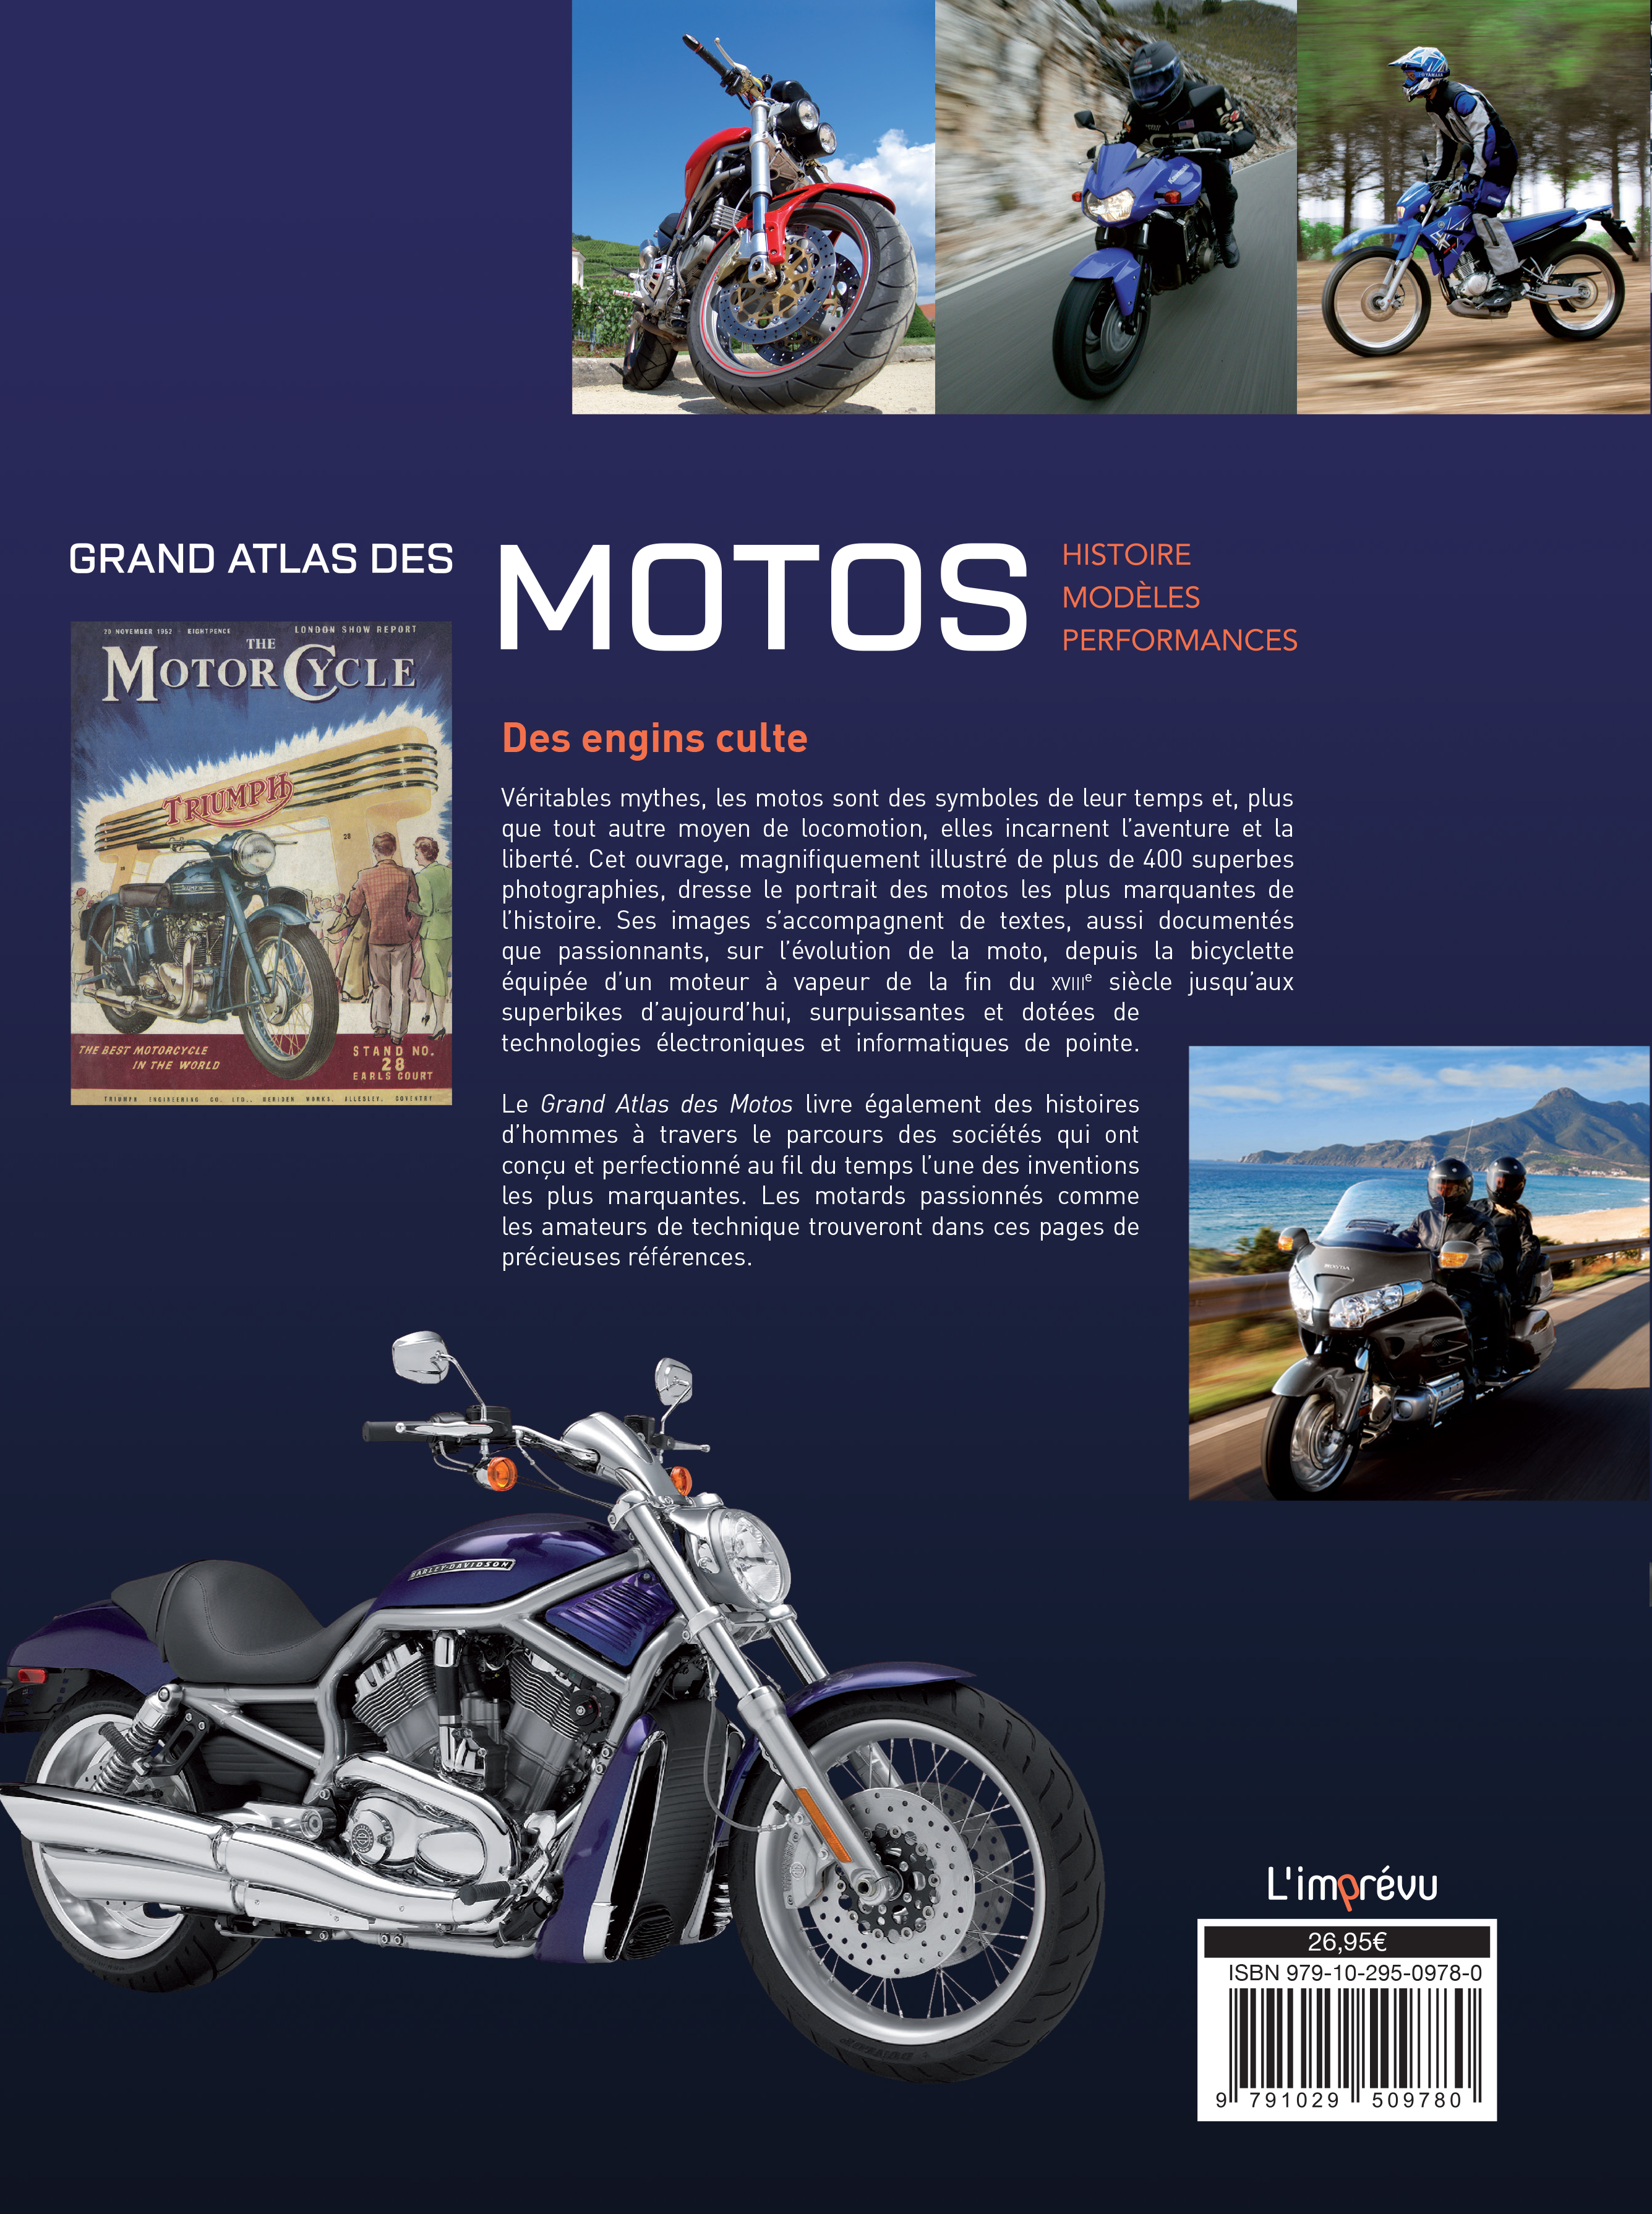 Grand Atlas Des Motos : Histoire, Modeles, Performances